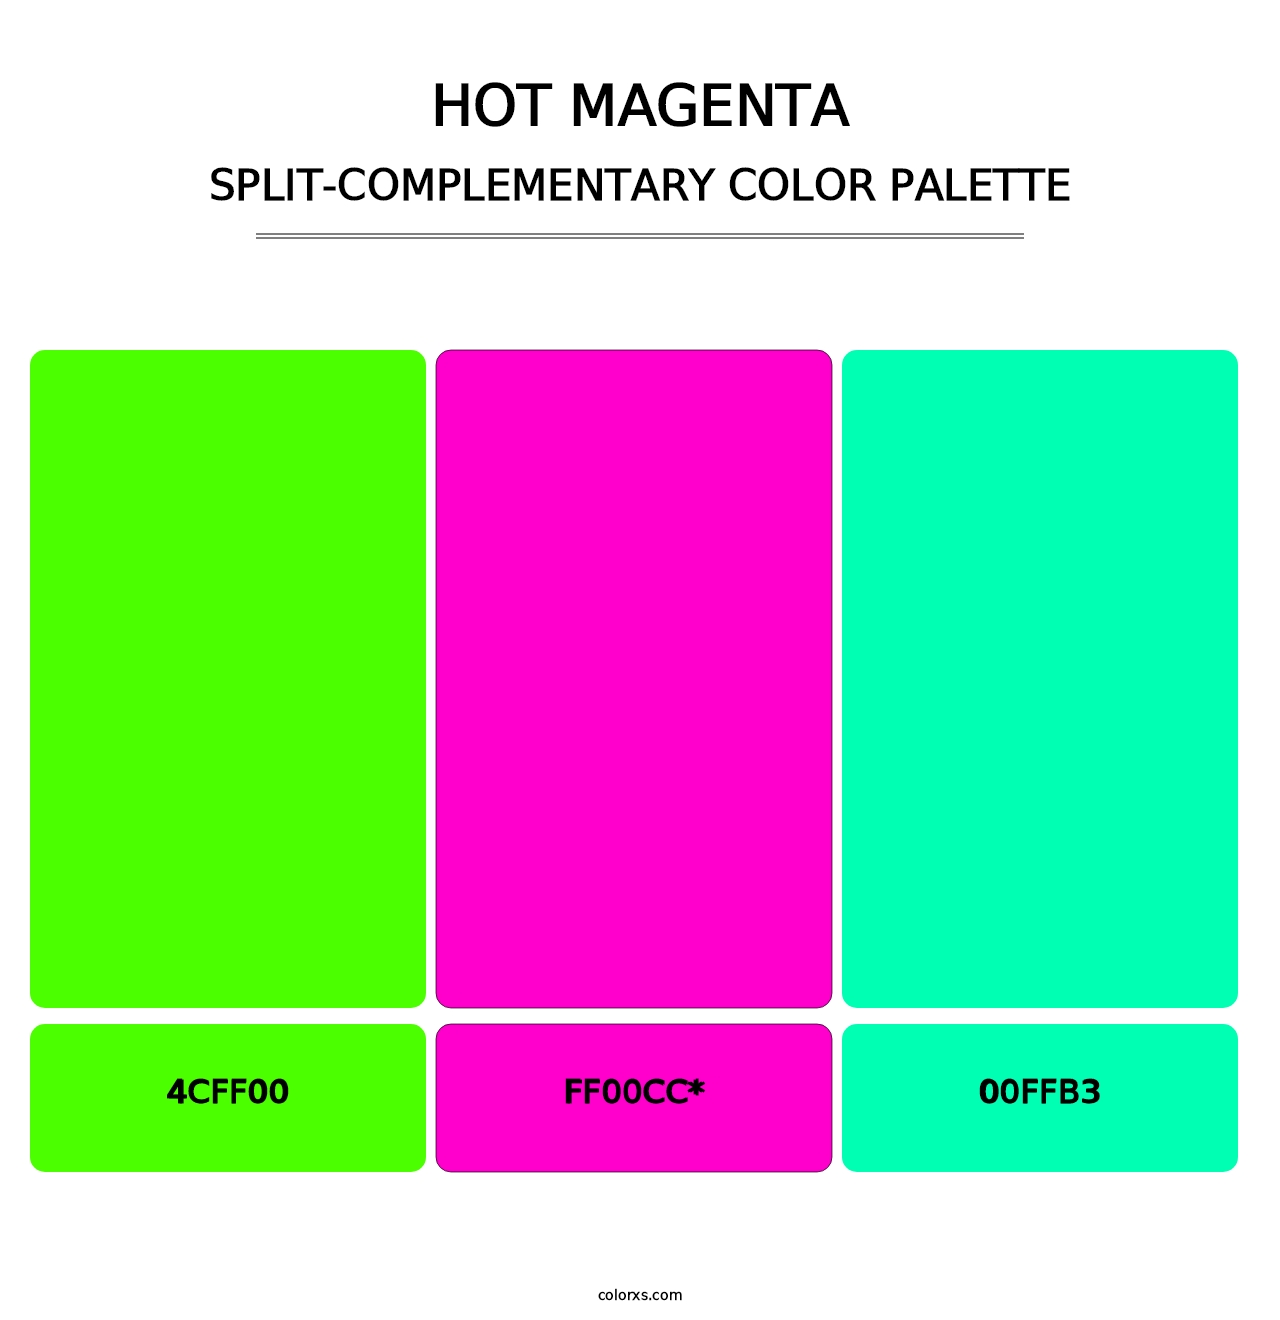 Hot Magenta - Split-Complementary Color Palette